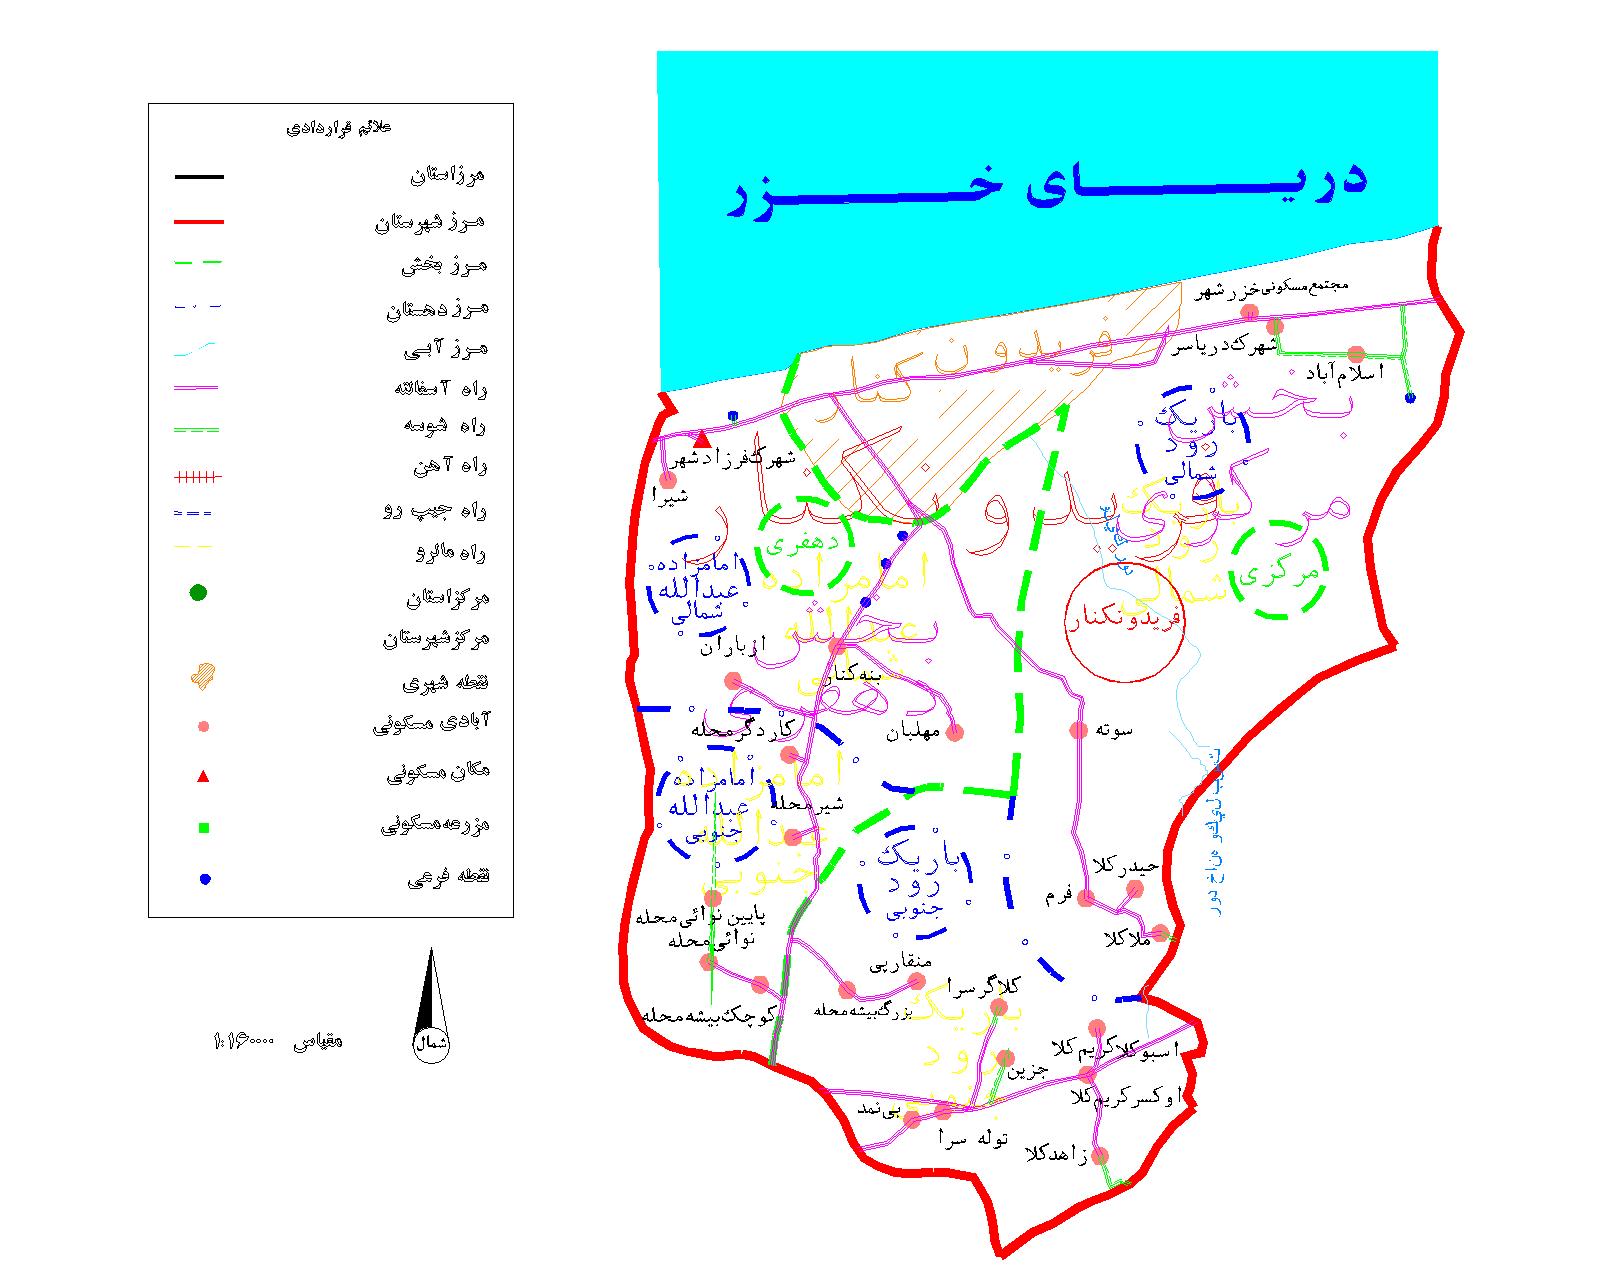 دانلود نقشه اتوکدی شهرستان فریدونکنار- استان مازندران - فایل کده: فروشگاه  همه!